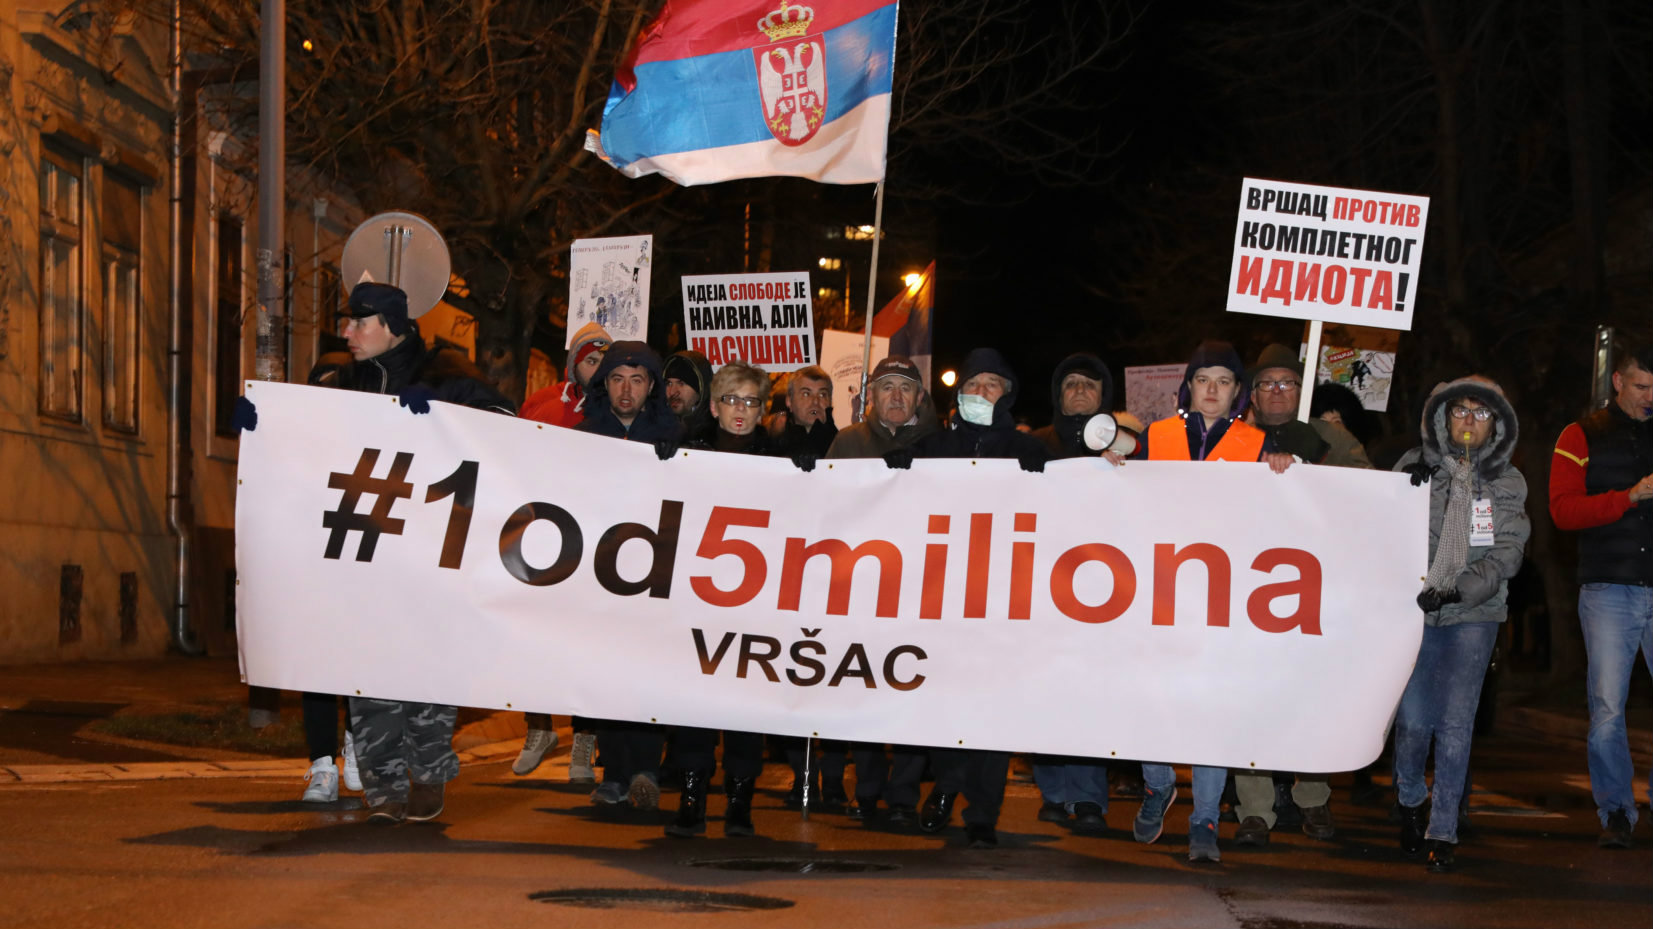 U Vršcu večeras sedmi protest 1 od 5 miliona 1